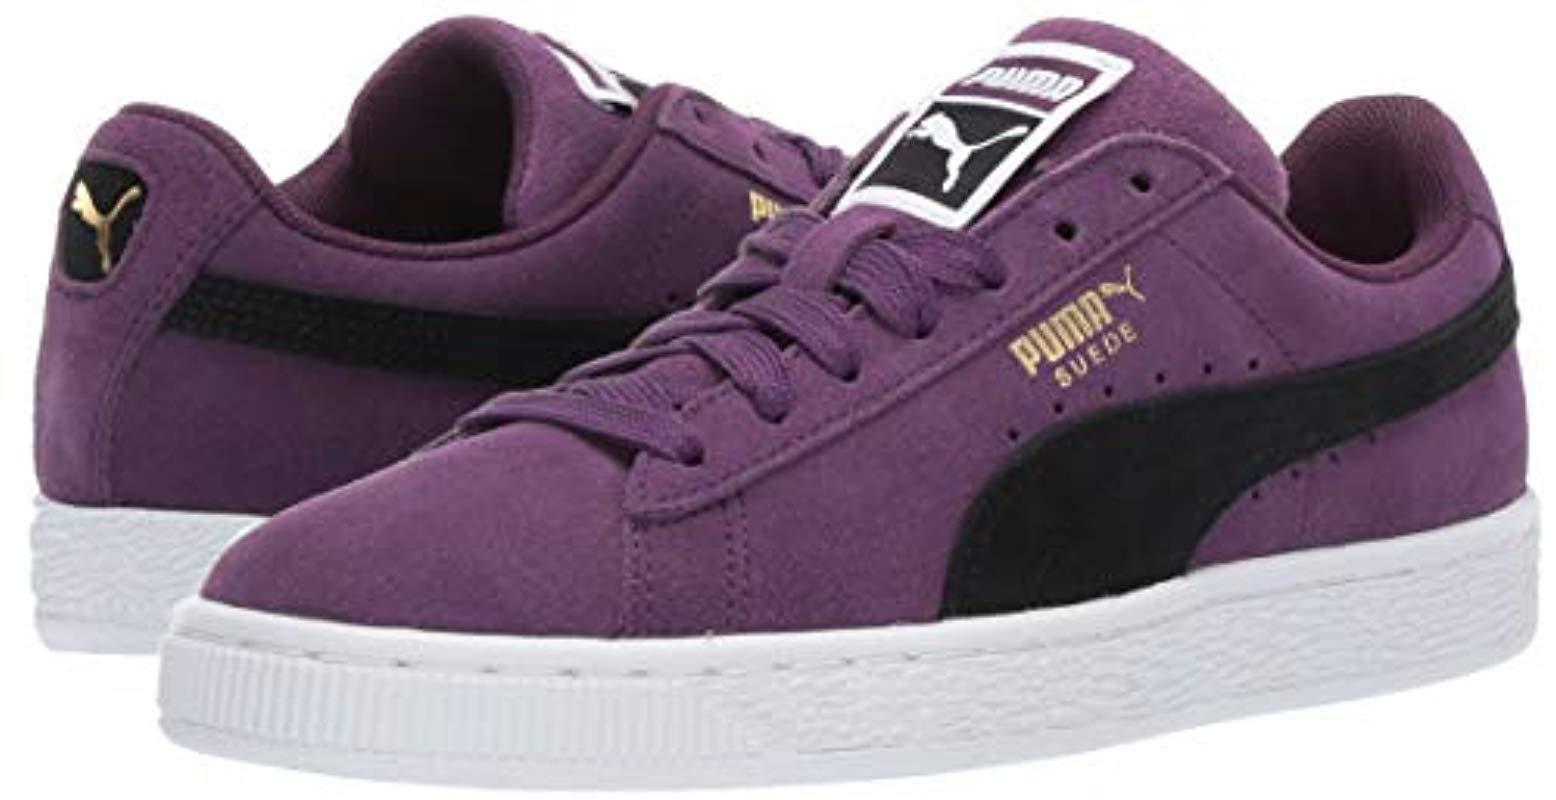 PUMA Suede Classic Sneaker in Purple - Lyst